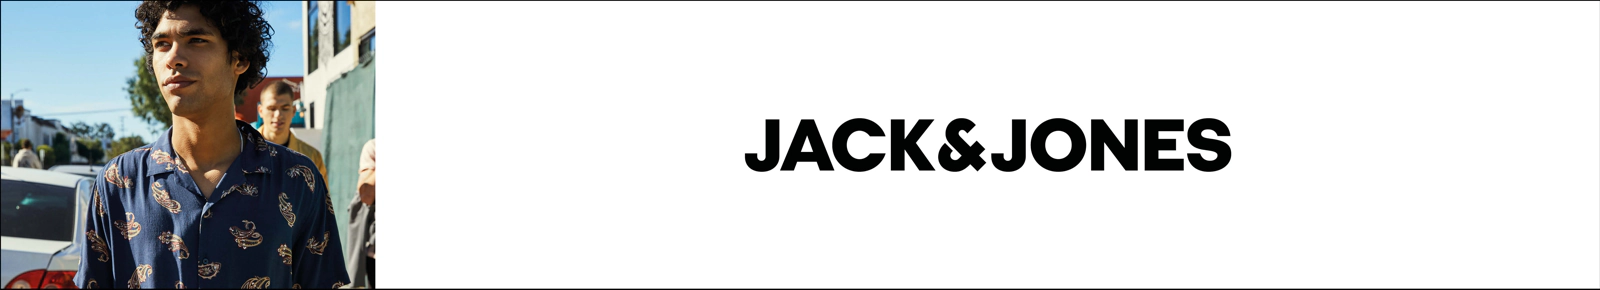 JACK & JONES Premium